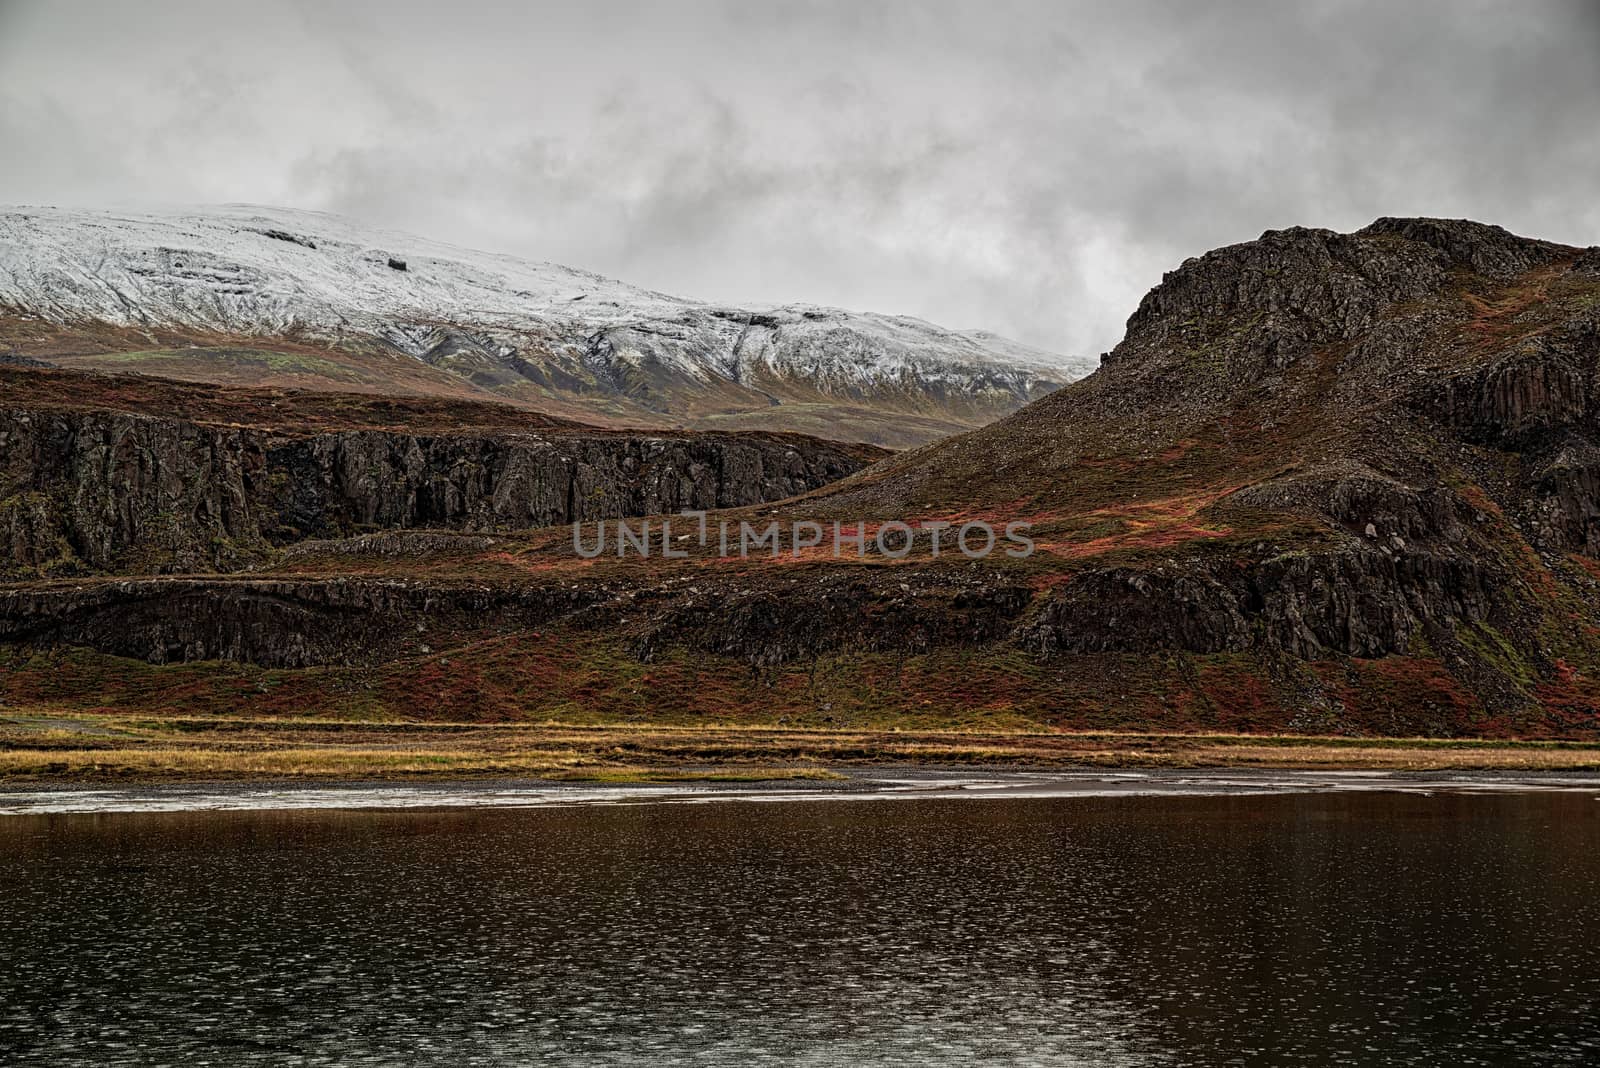 Mountains in Borgarfjordur Eystri, Iceland by LuigiMorbidelli